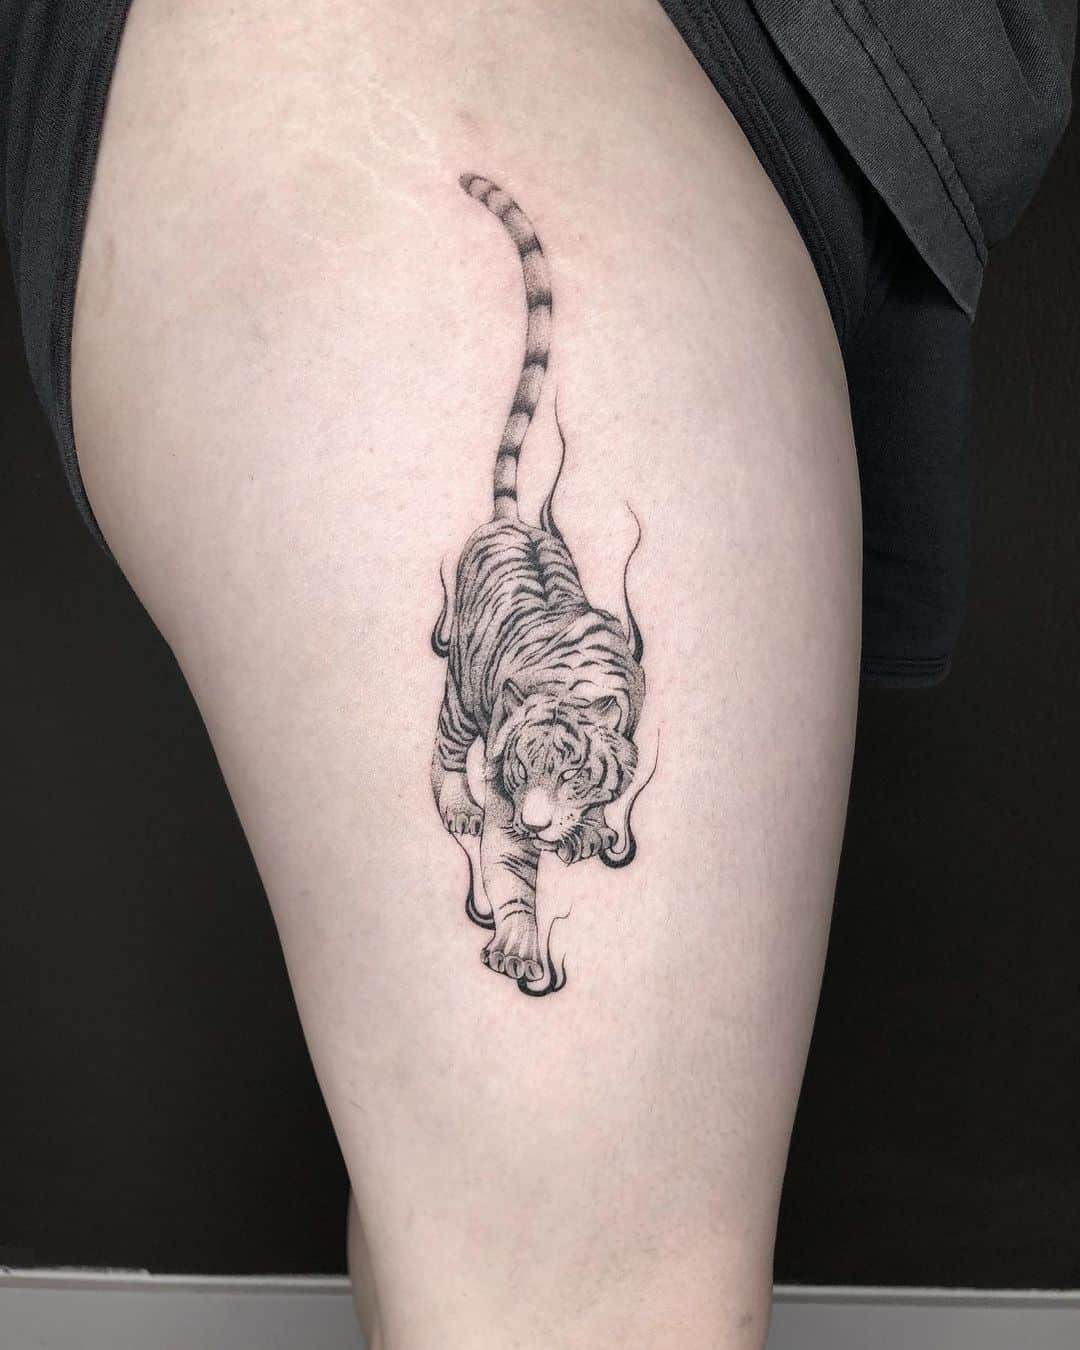 Realistic tiger tattoo by logan artstudio